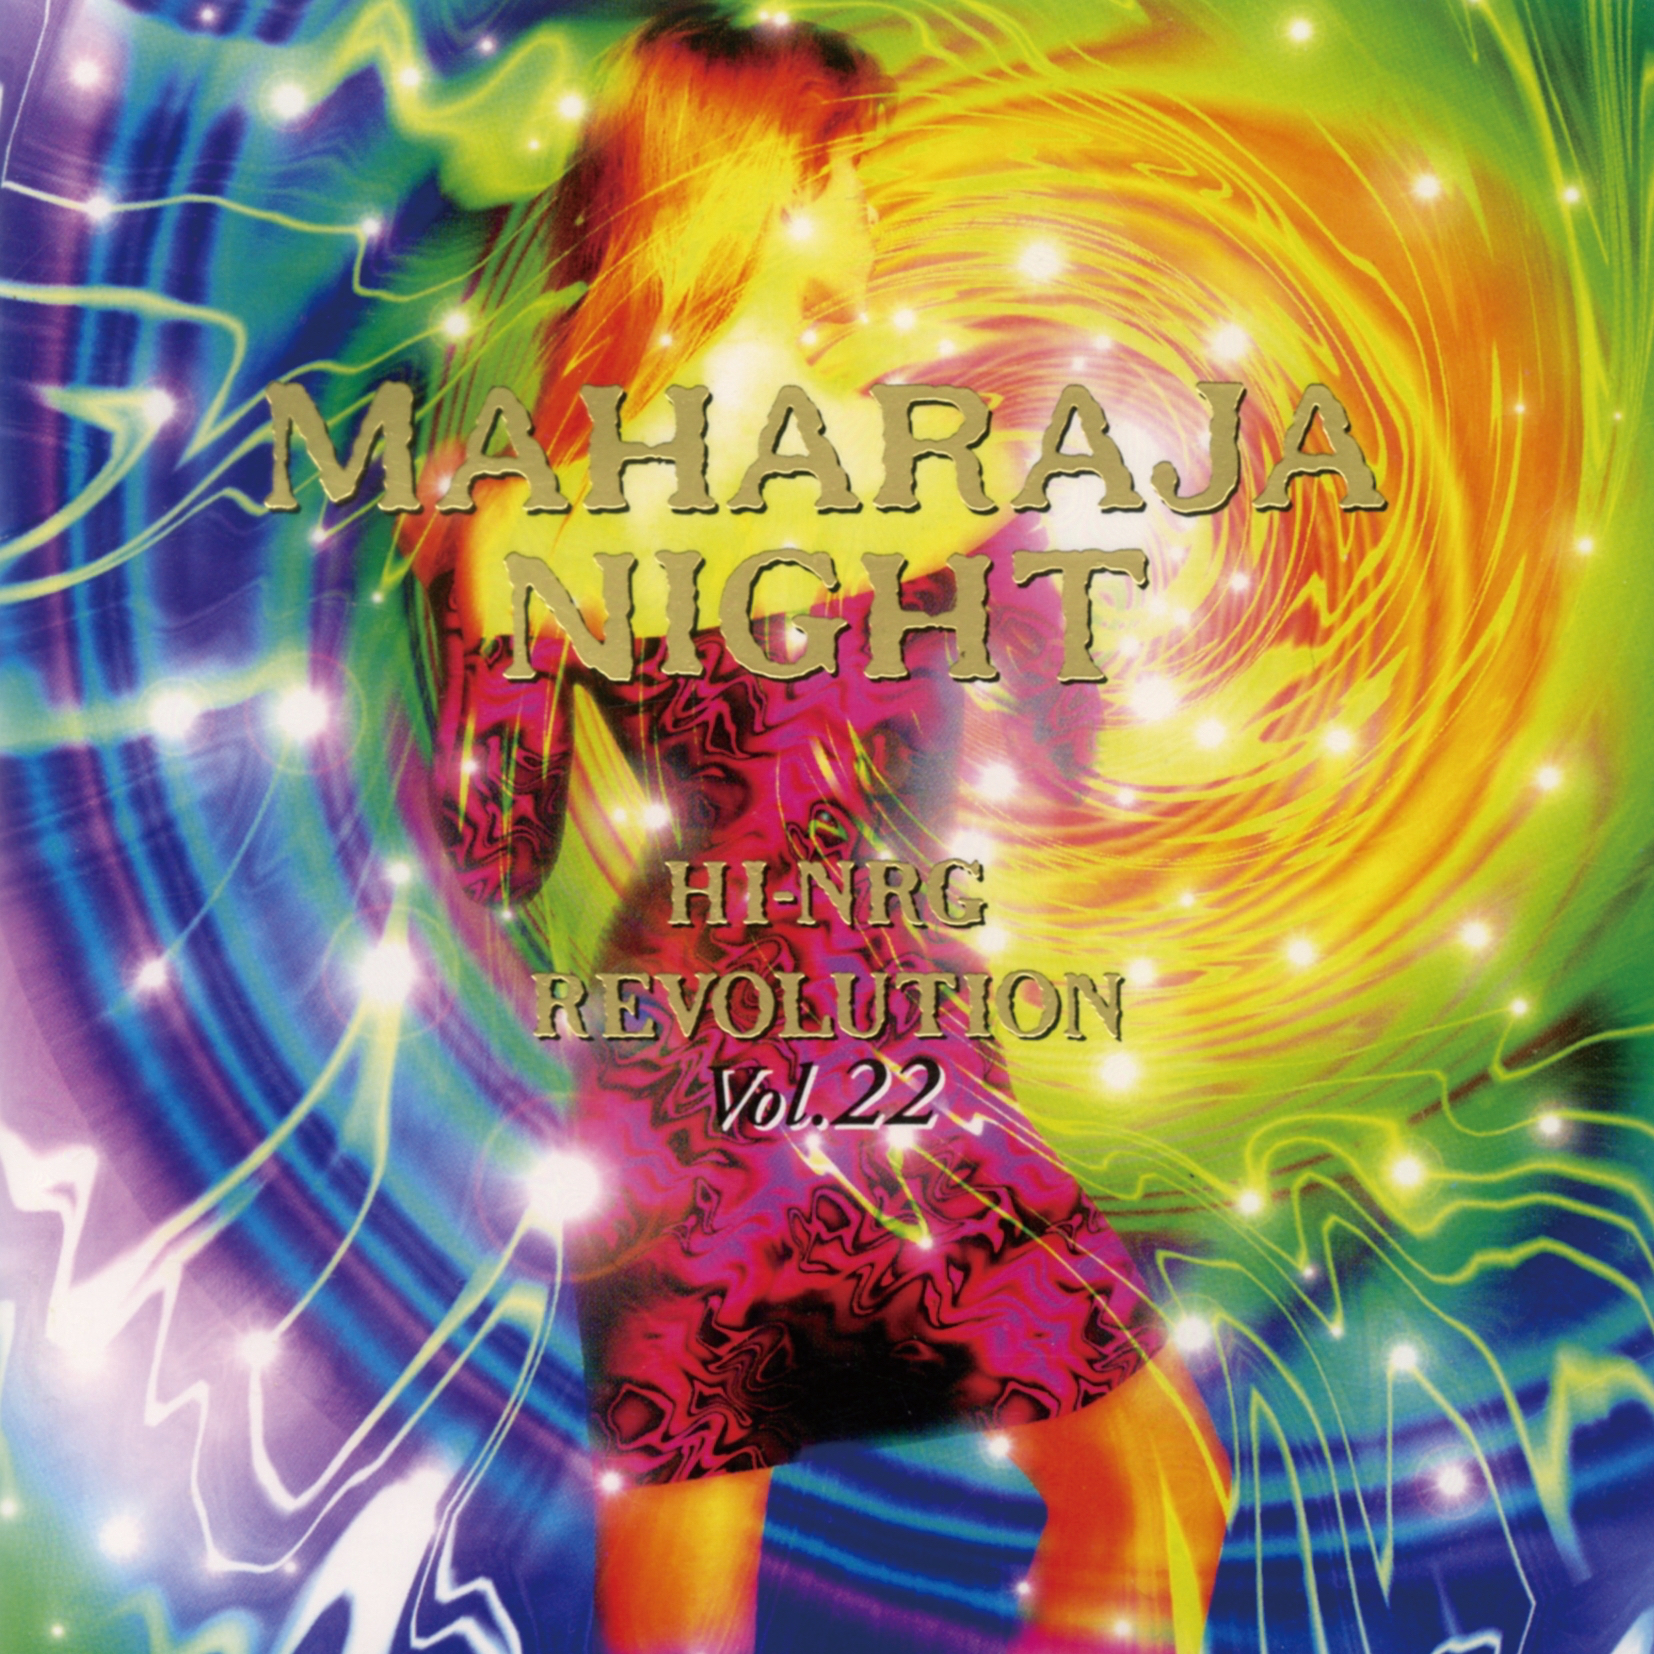 CD ユーロビート マハラジャナイト Vol.19 MAHARAJA NIGHT HI-NRG 